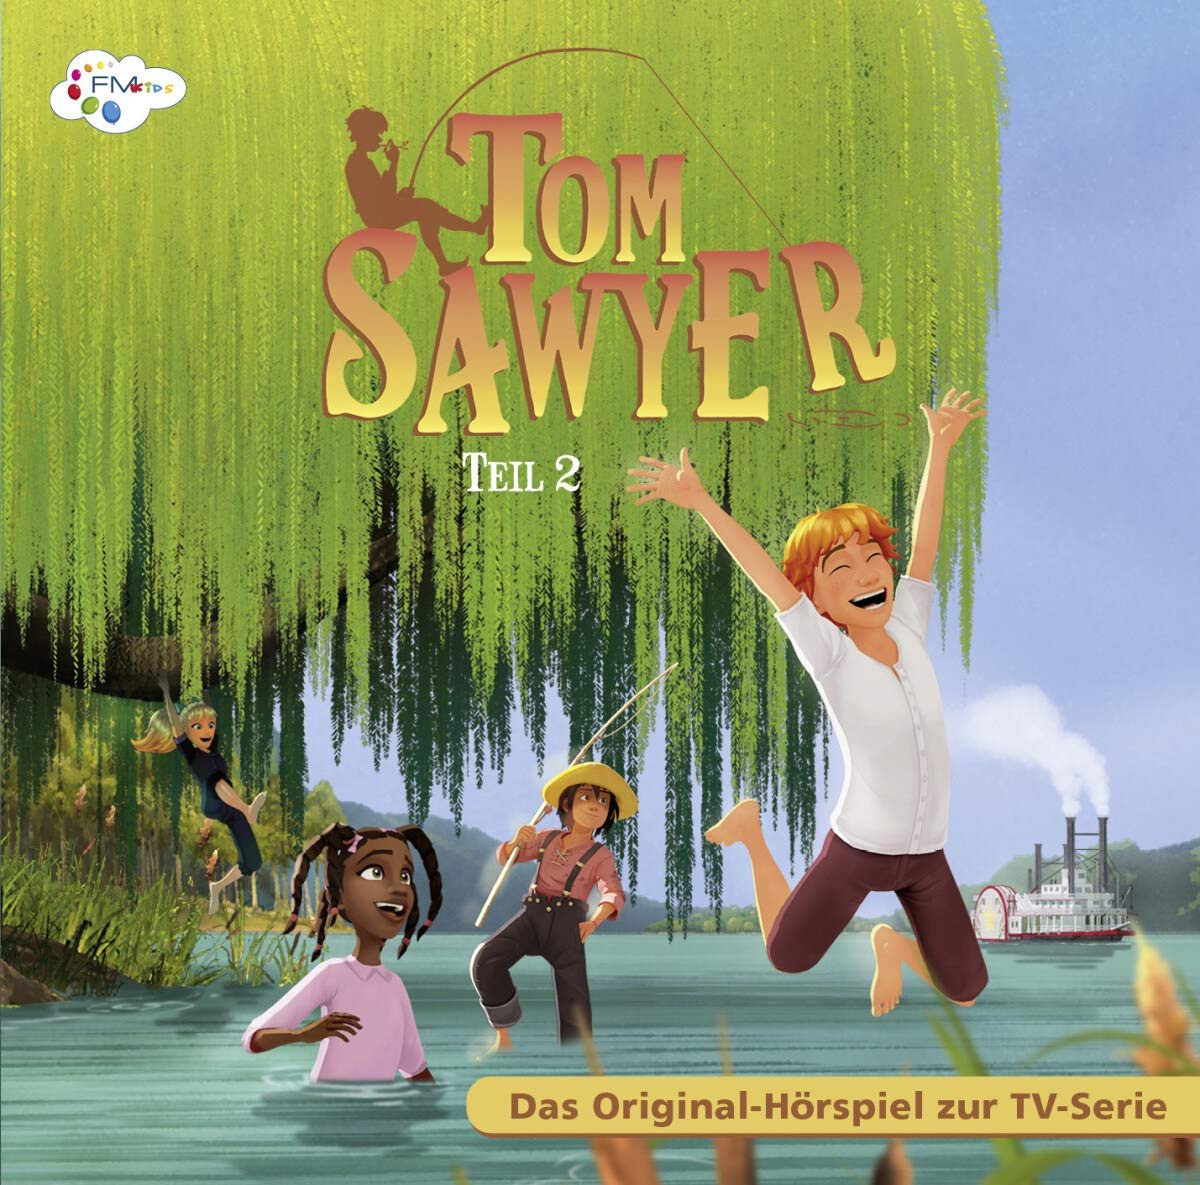 Tom Sawyer - Teil 2 (Hörspiel zur TV-Serie)